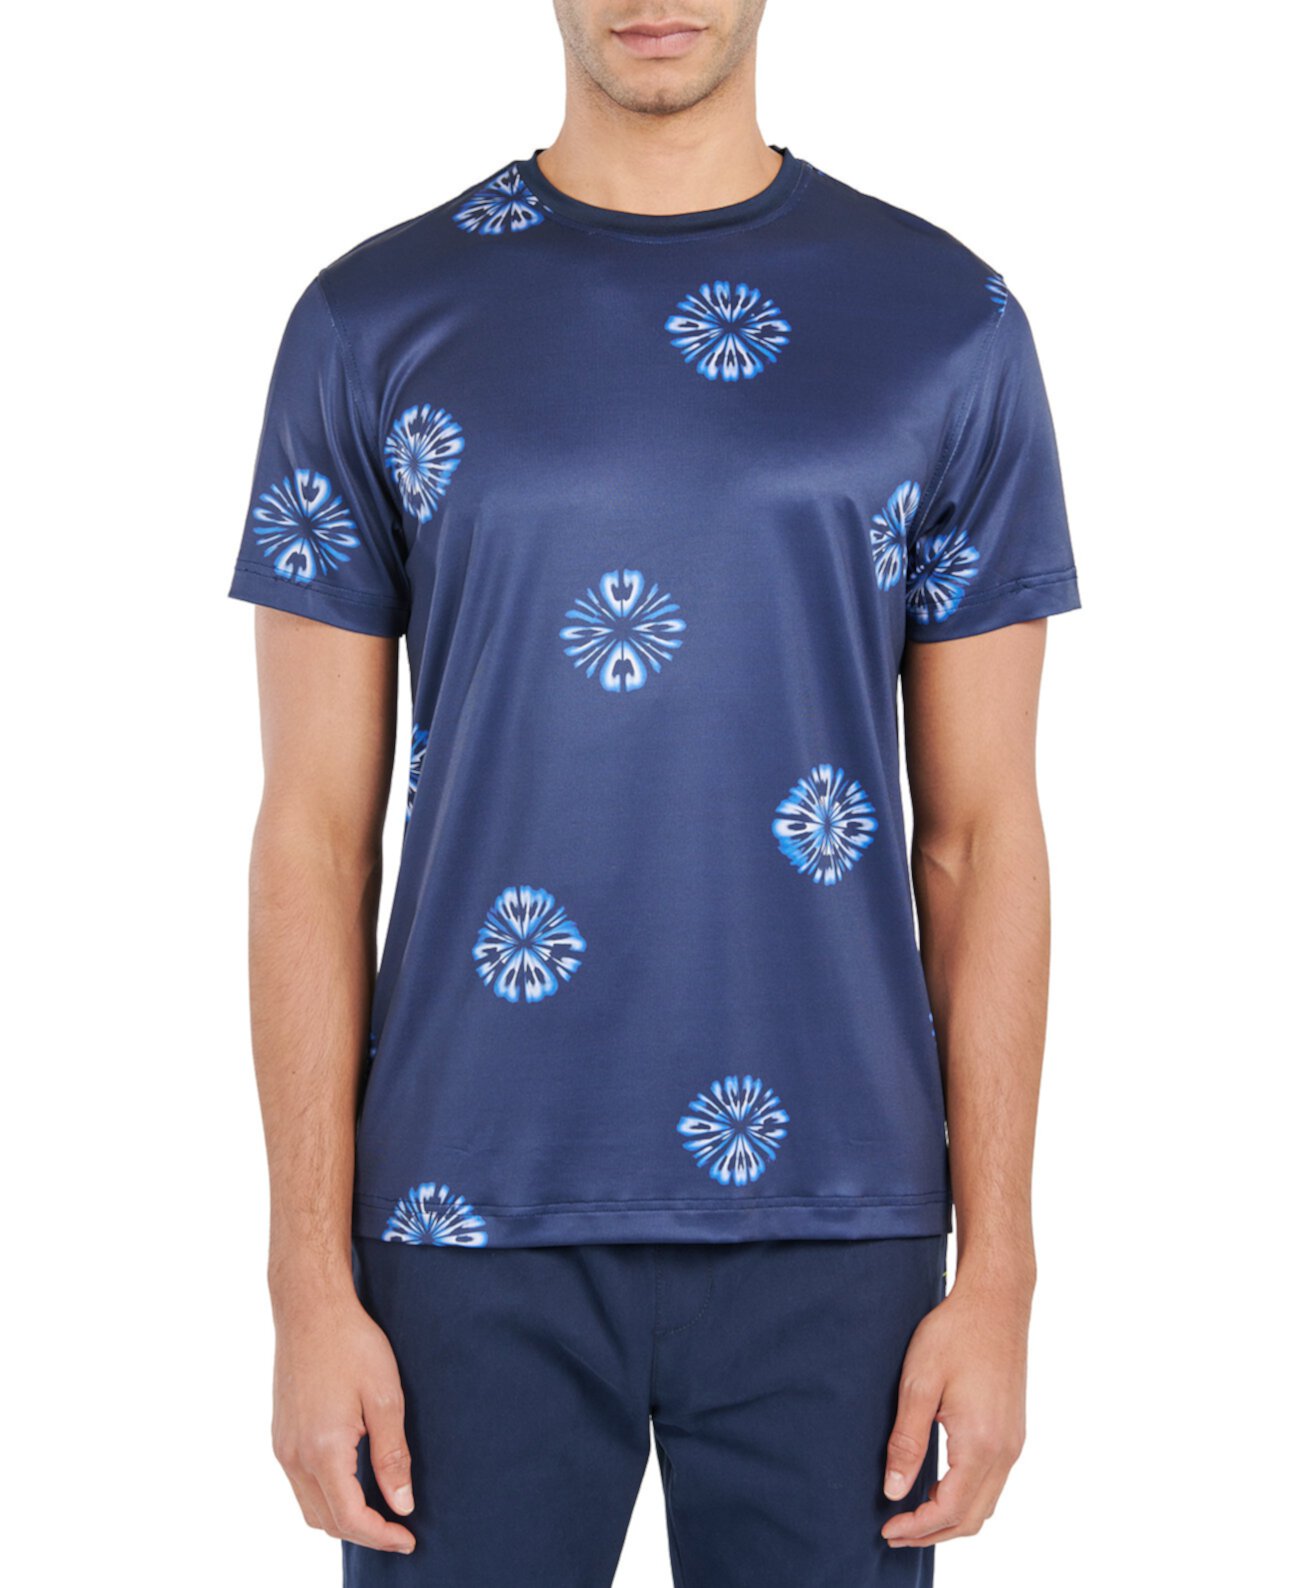 Мужская облегающая футболка с абстрактным цветочным принтом Society of Threads